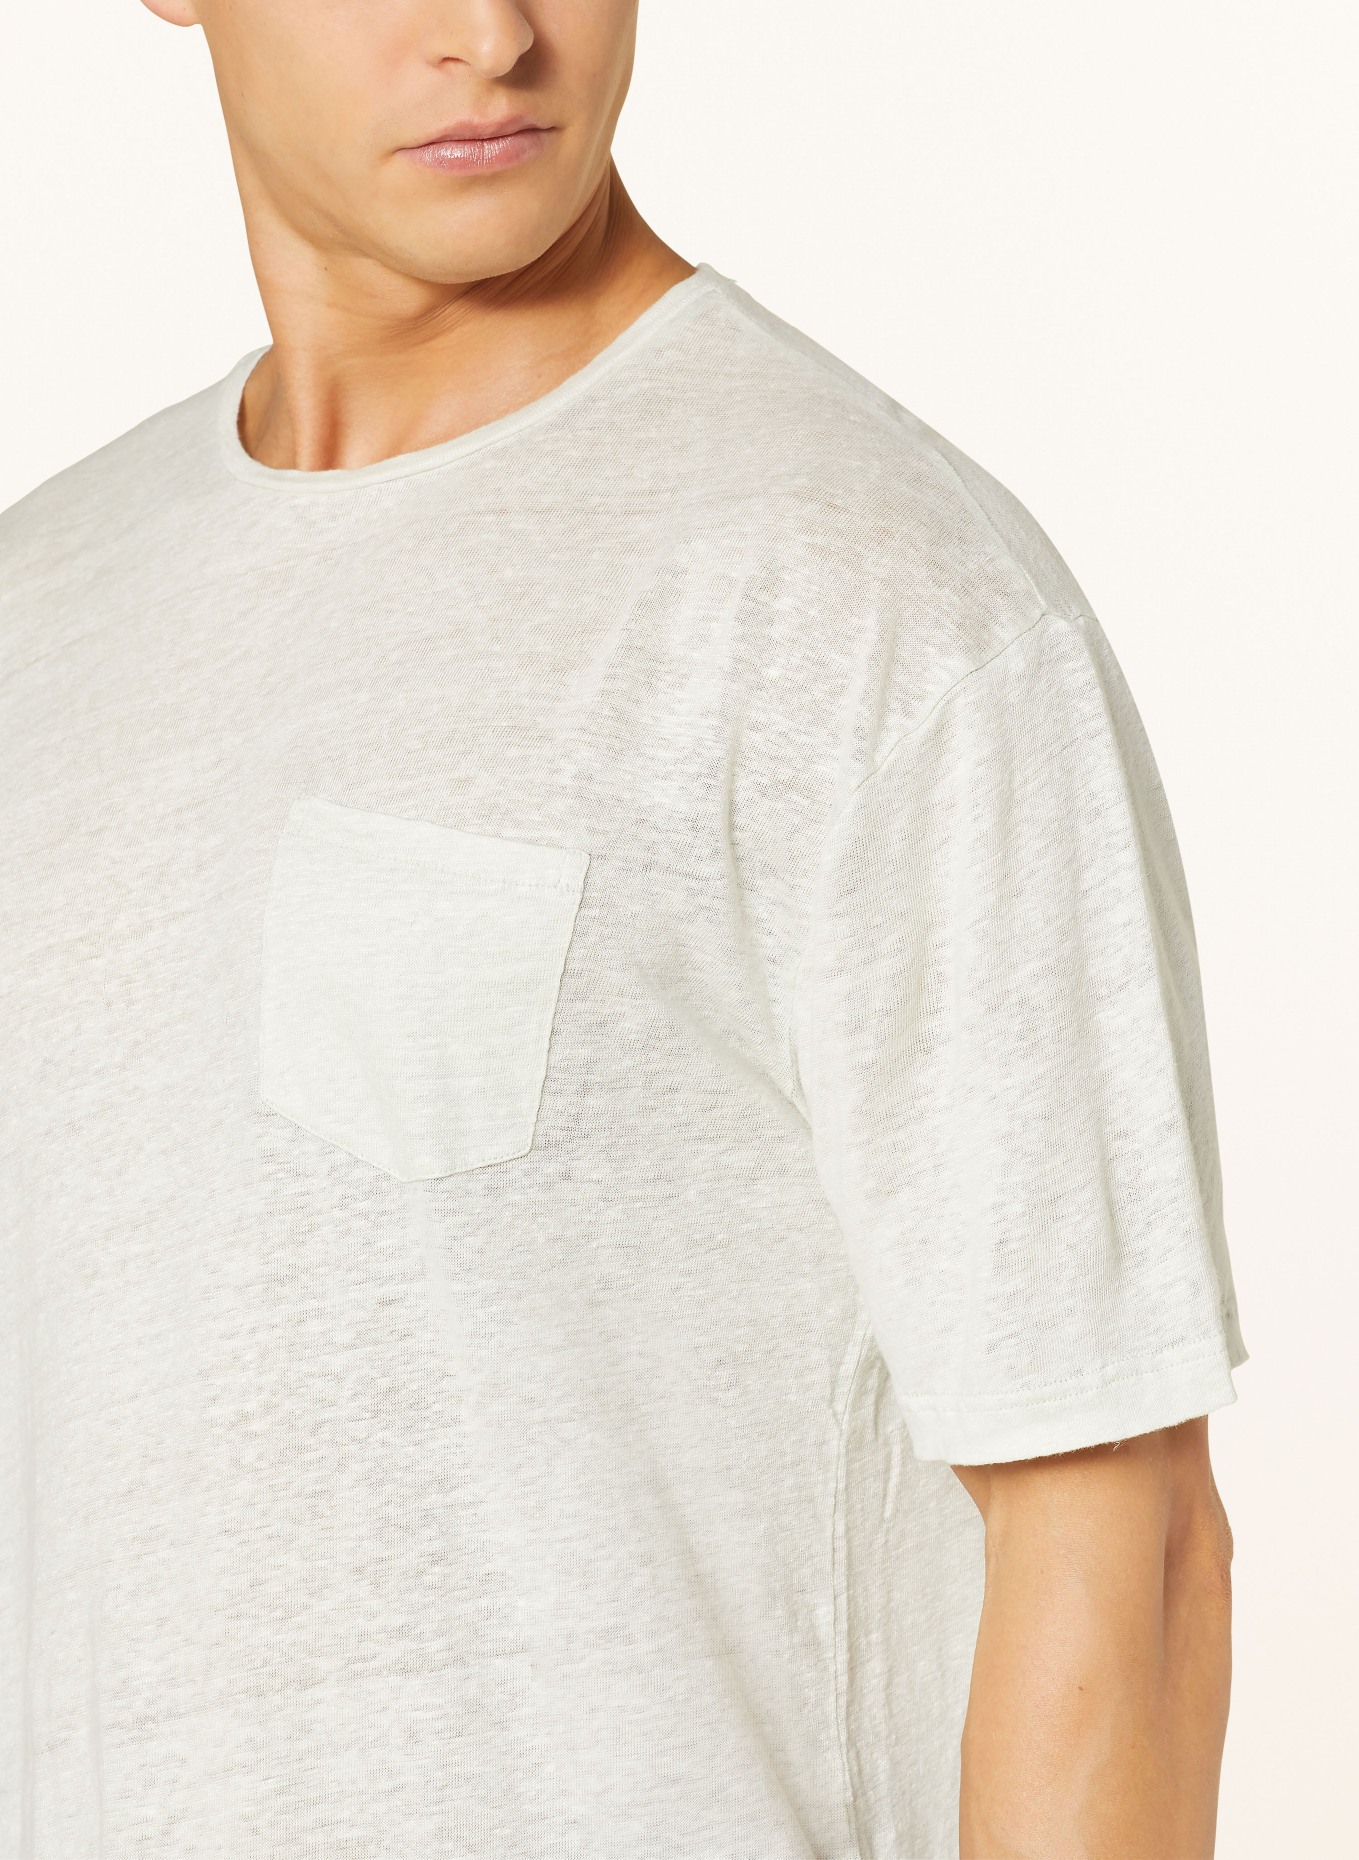 FRESCOBOL CARIOCA T-shirt CARMO made of linen, Color: MINT (Image 4)